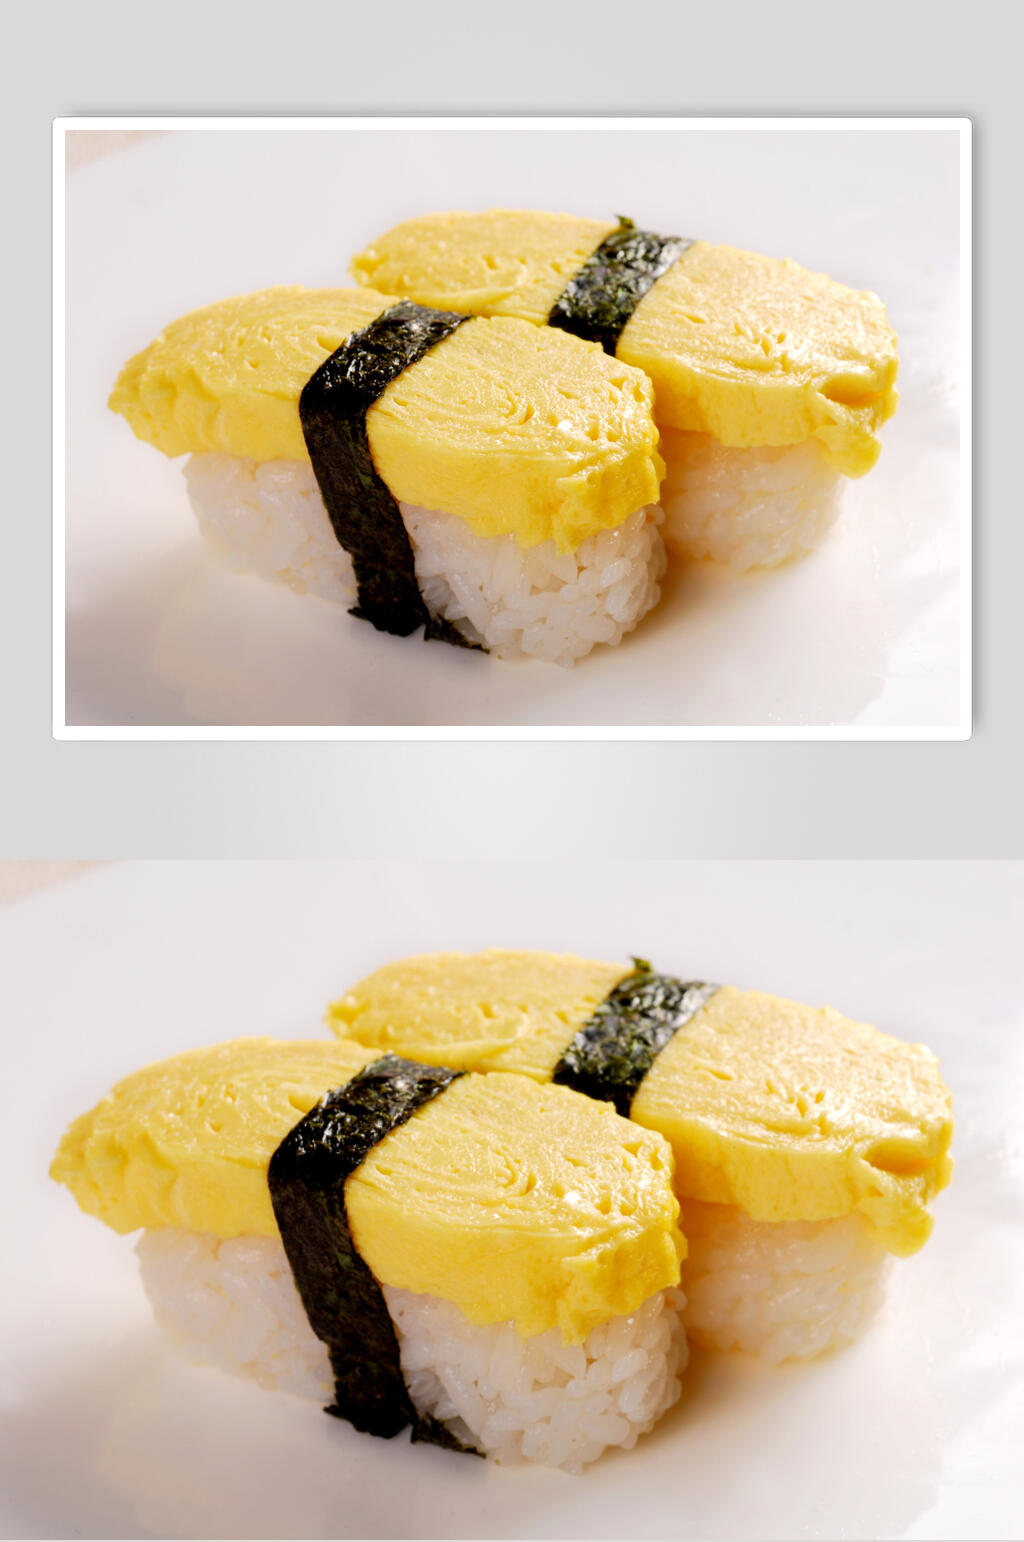 焦糖玉子寿司图片